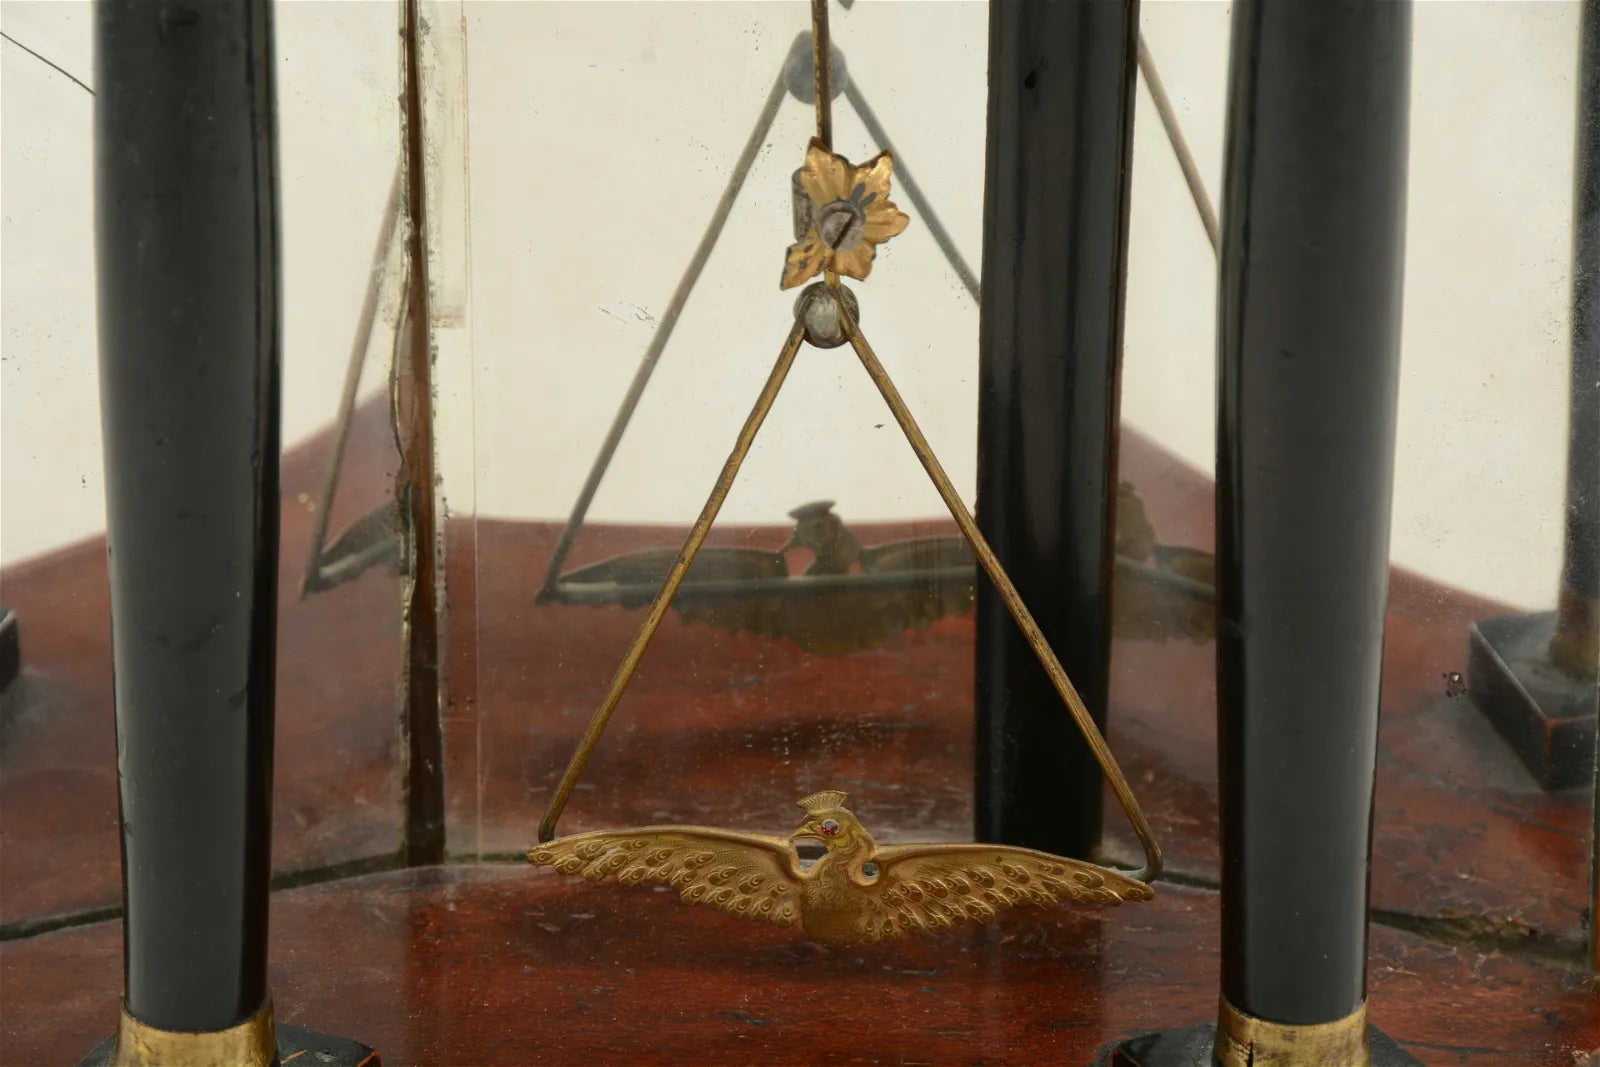 TK2-035: Early19th Century Austrian Biedermeier Shelf Clock